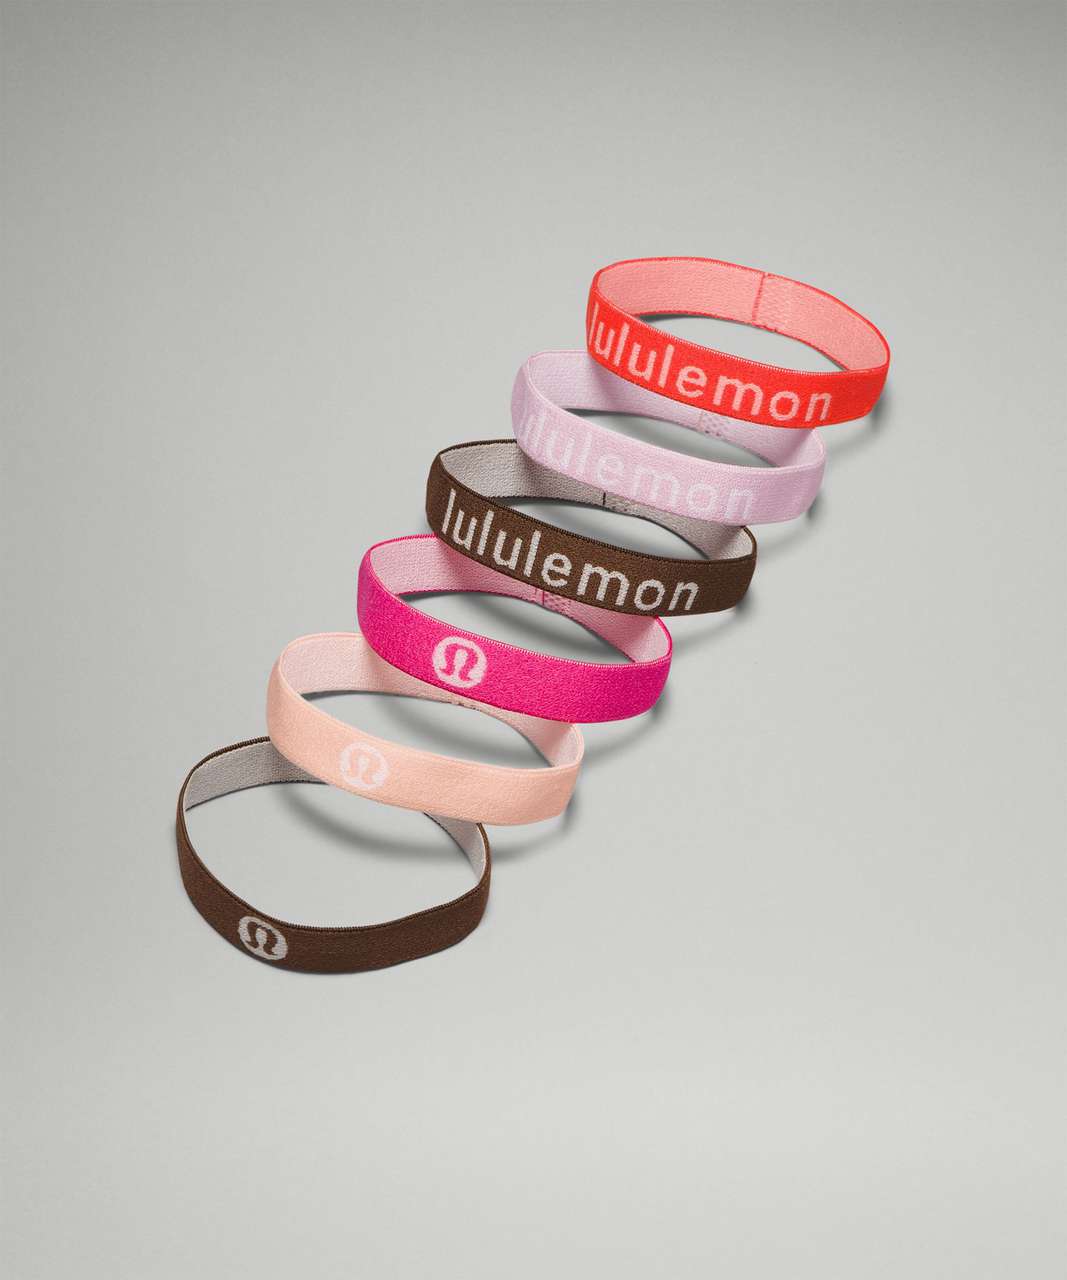 Lululemon Flat Hair Elastics *6 Pack - Solar Orange / Pink Peony / Java / Melon Sorbet / Sonic Pink / Java